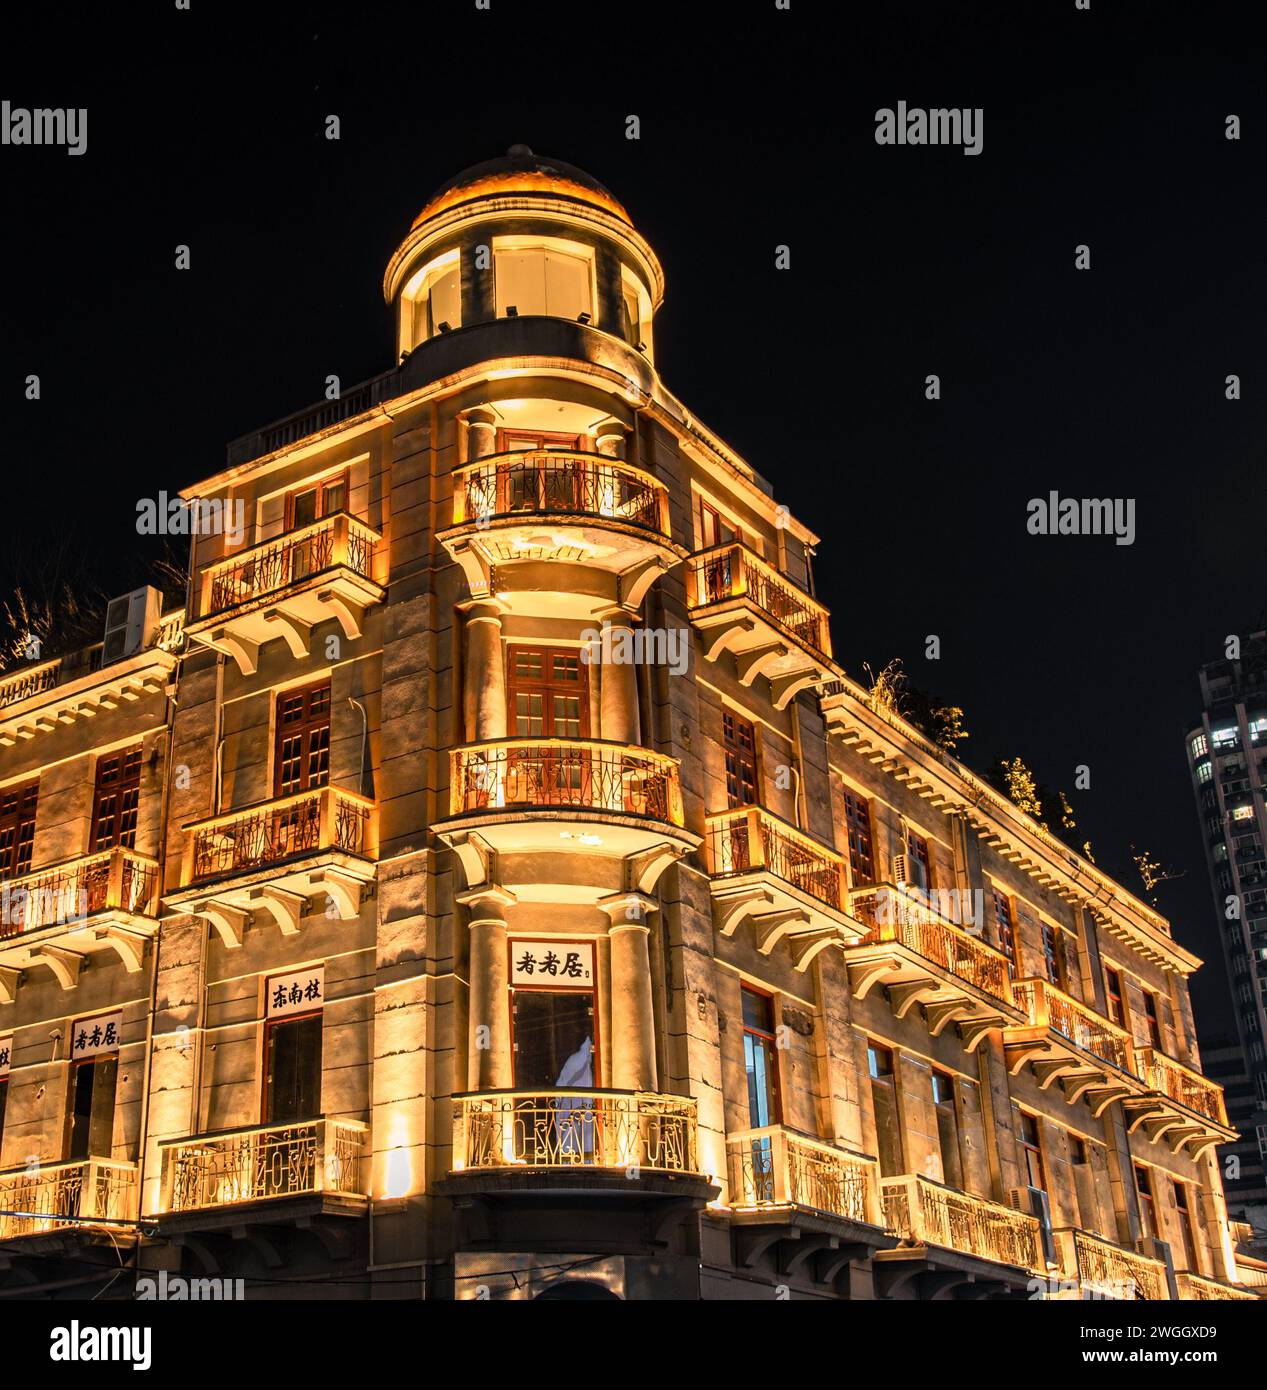 Un bâtiment centenaire avec un design unique, qui brille toujours brillamment avec des lumières la nuit. Wuhan, Chine. Banque D'Images